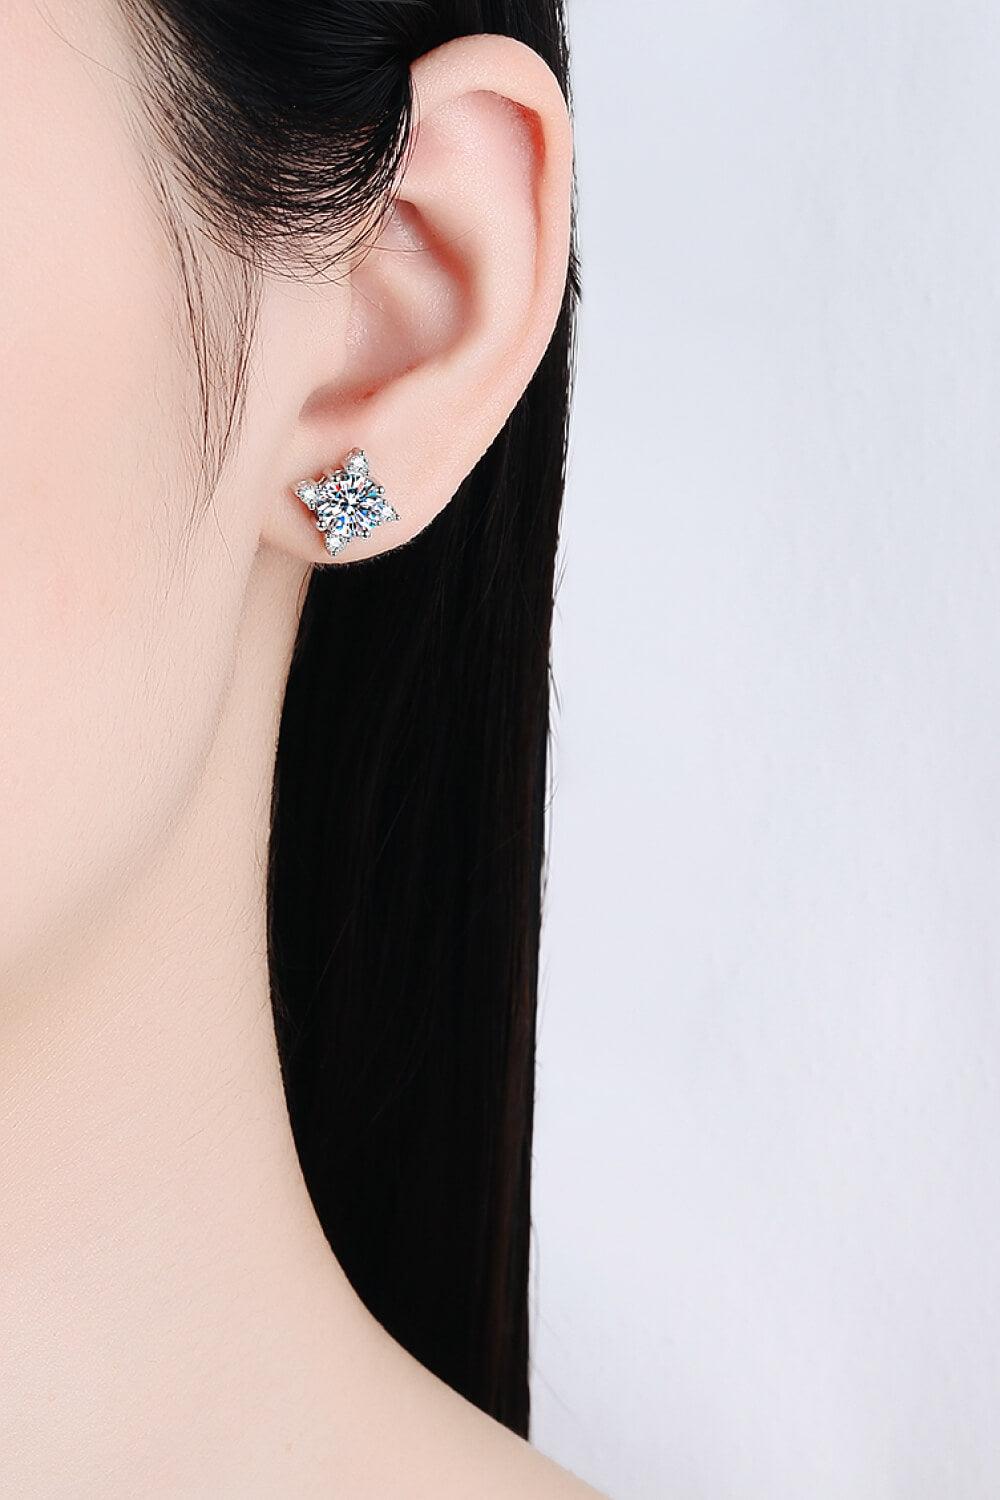 Four Leaf Clover 2 Carat Moissanite Stud Earrings - Trendha